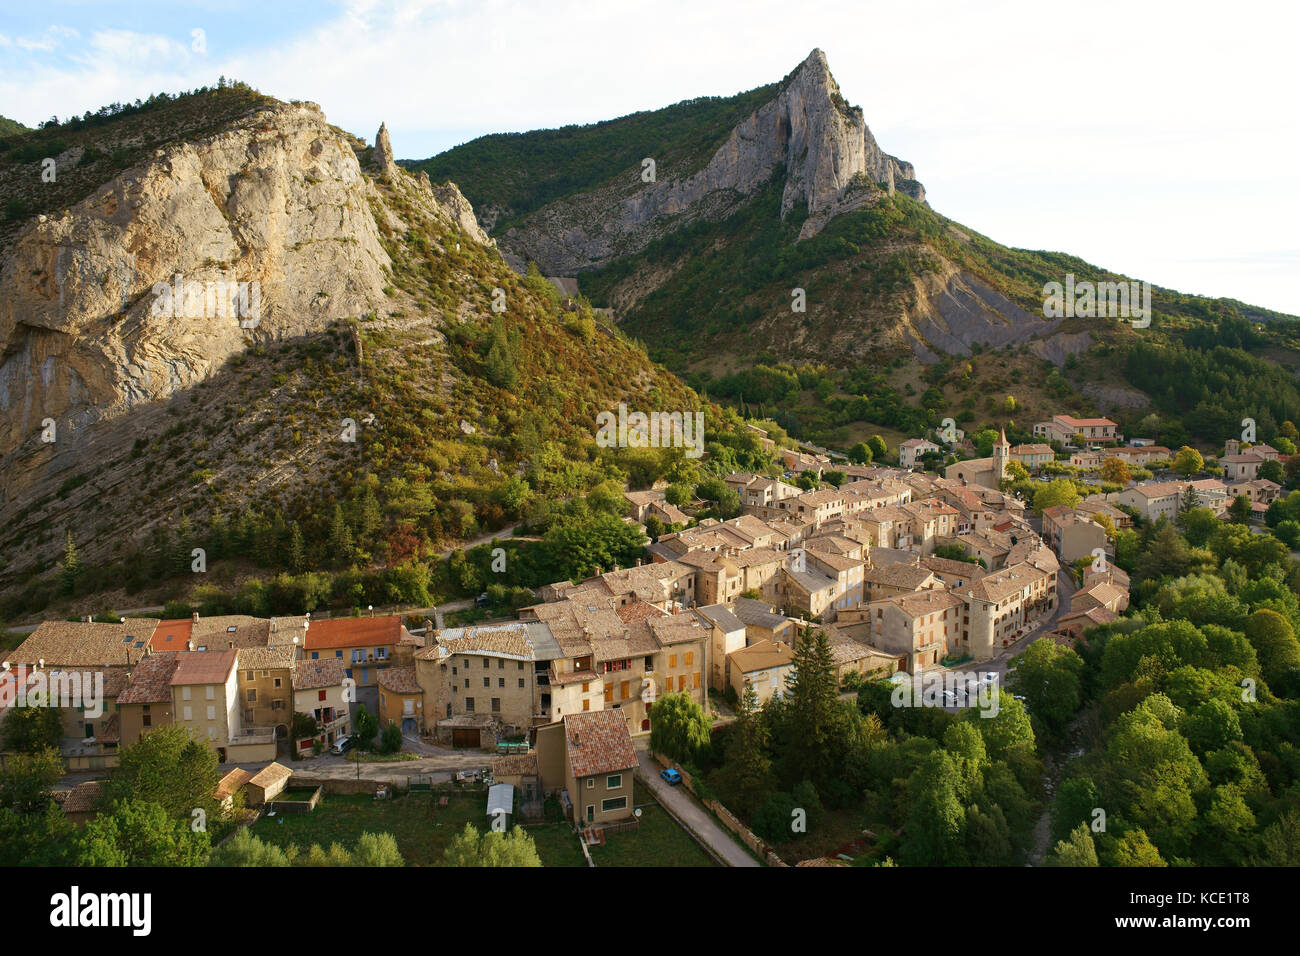 Pittoresco villaggio medievale circondato da magnifiche scogliere, questo è un luogo ben noto per gli appassionati di arrampicata. Orpierre, Hautes-Alpes, Francia. Foto Stock